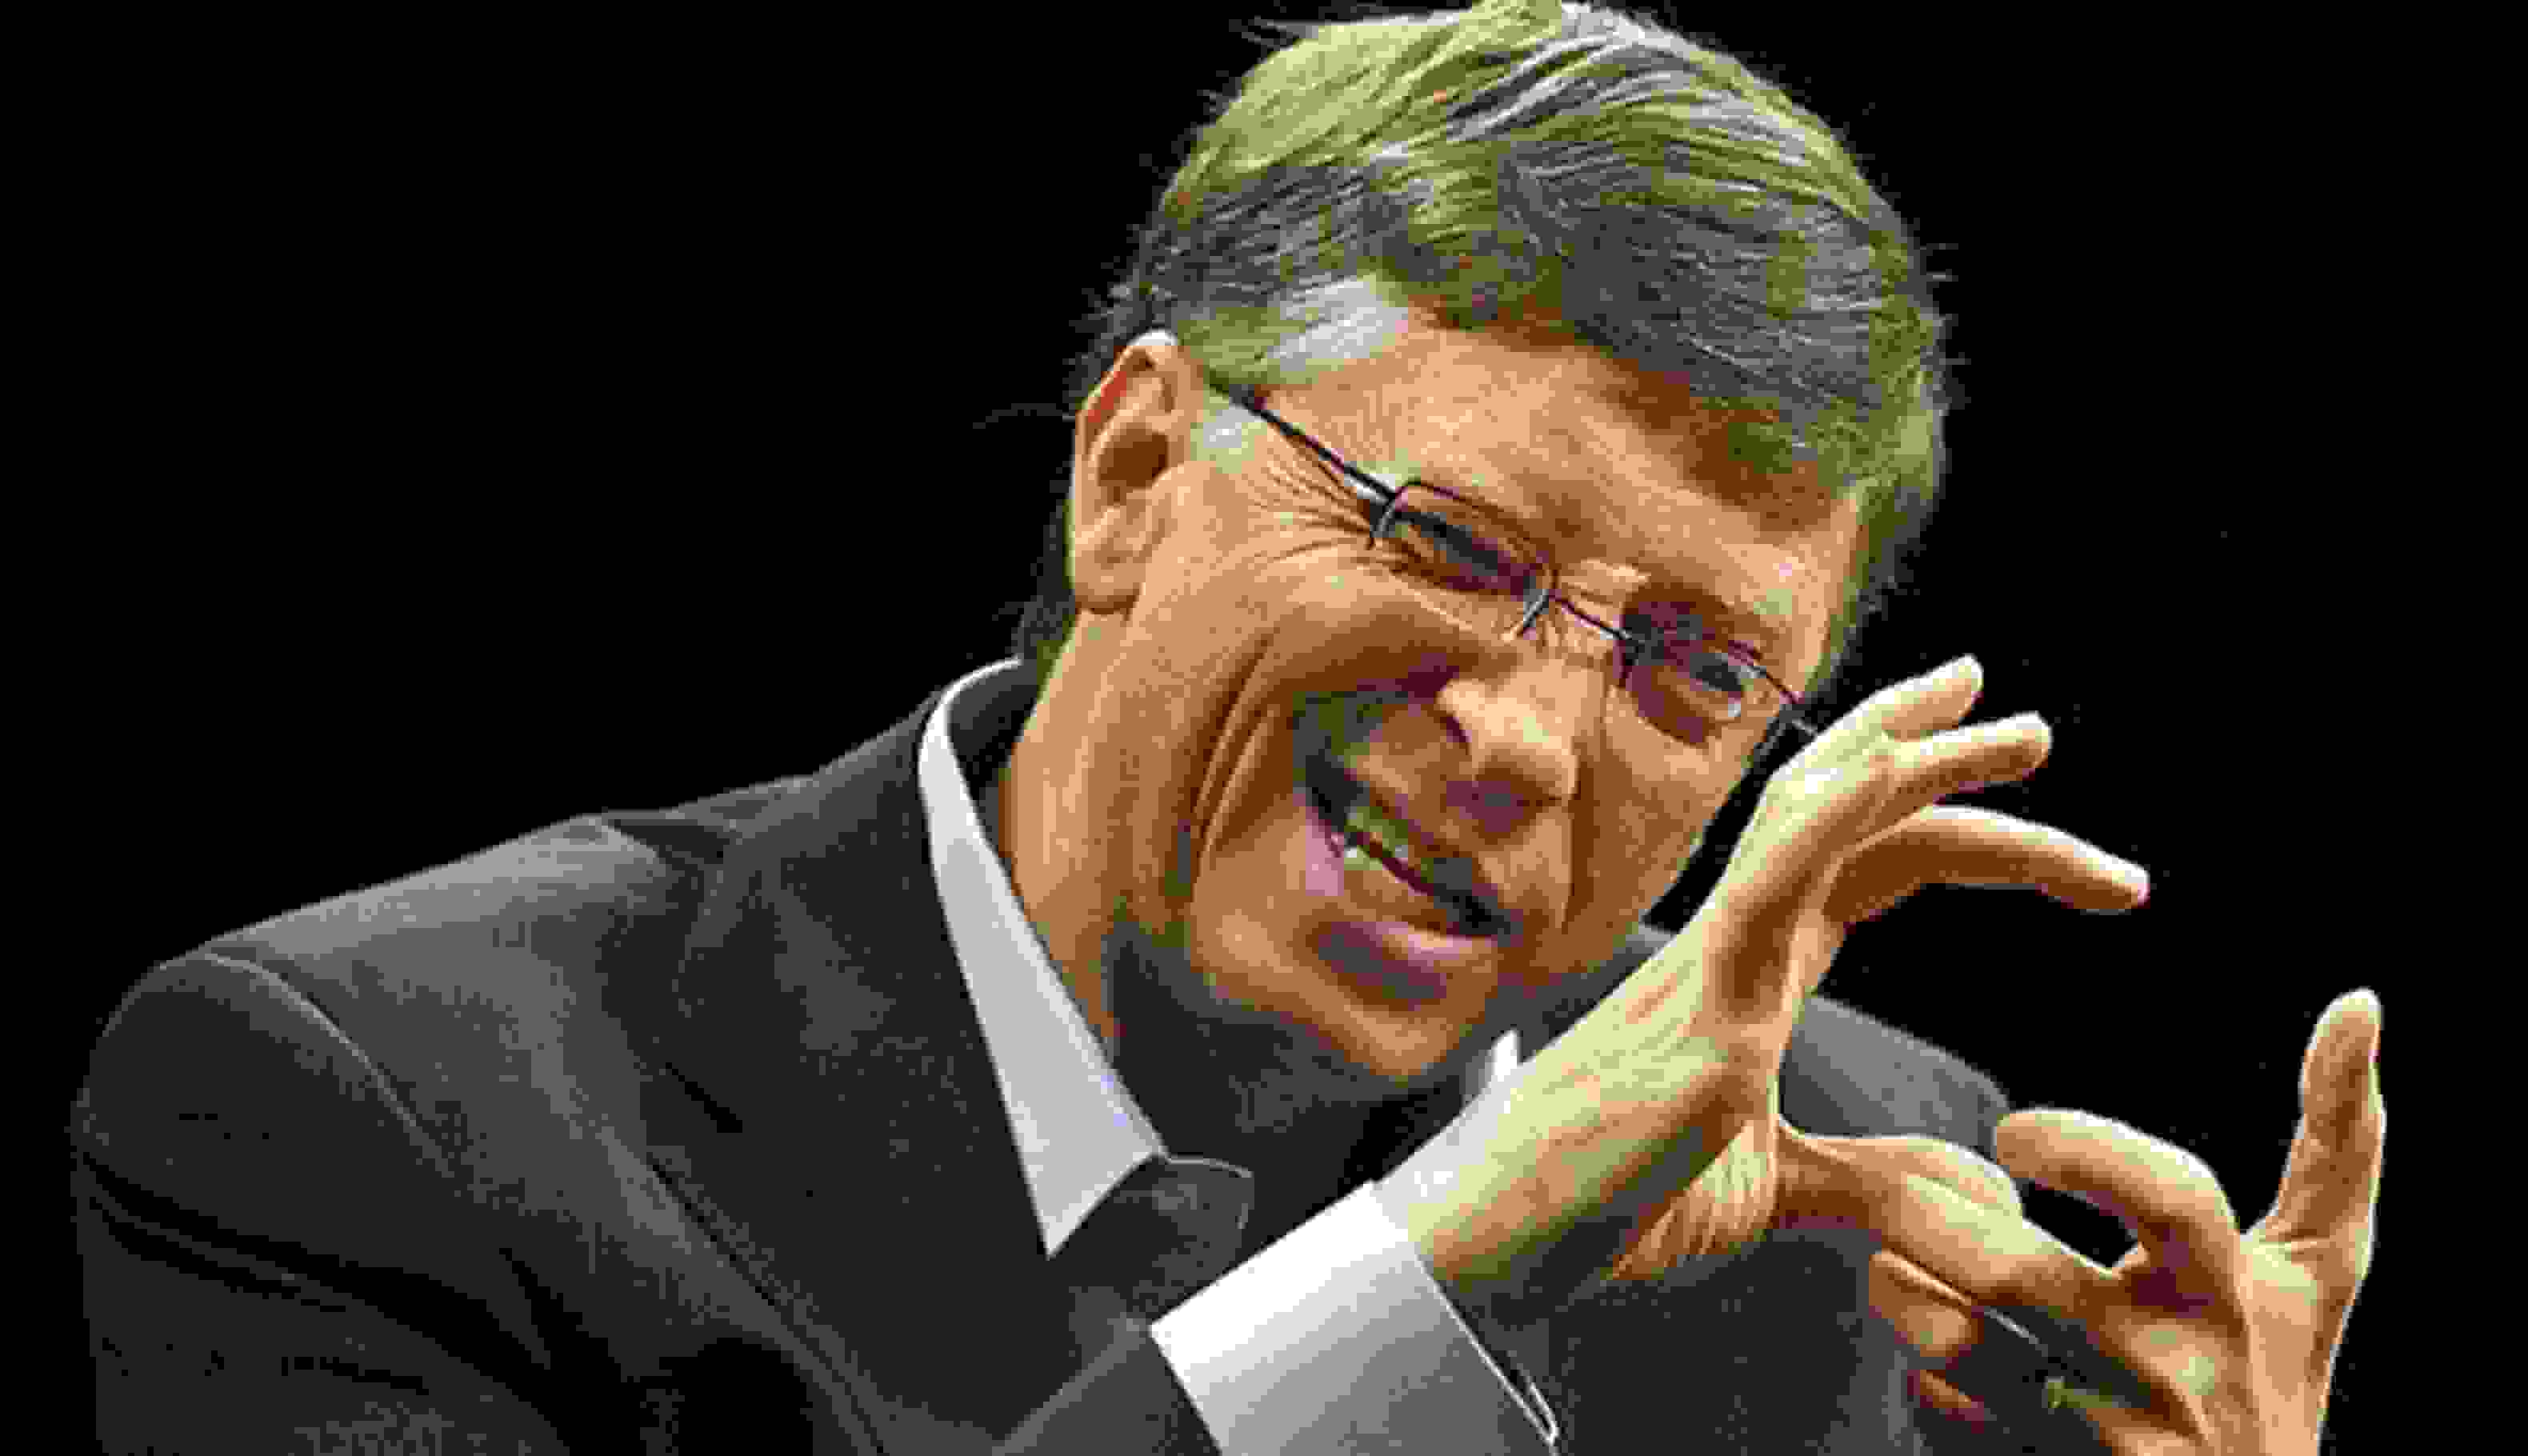 10 предсказаний Билла Гейтса, которые сбылись